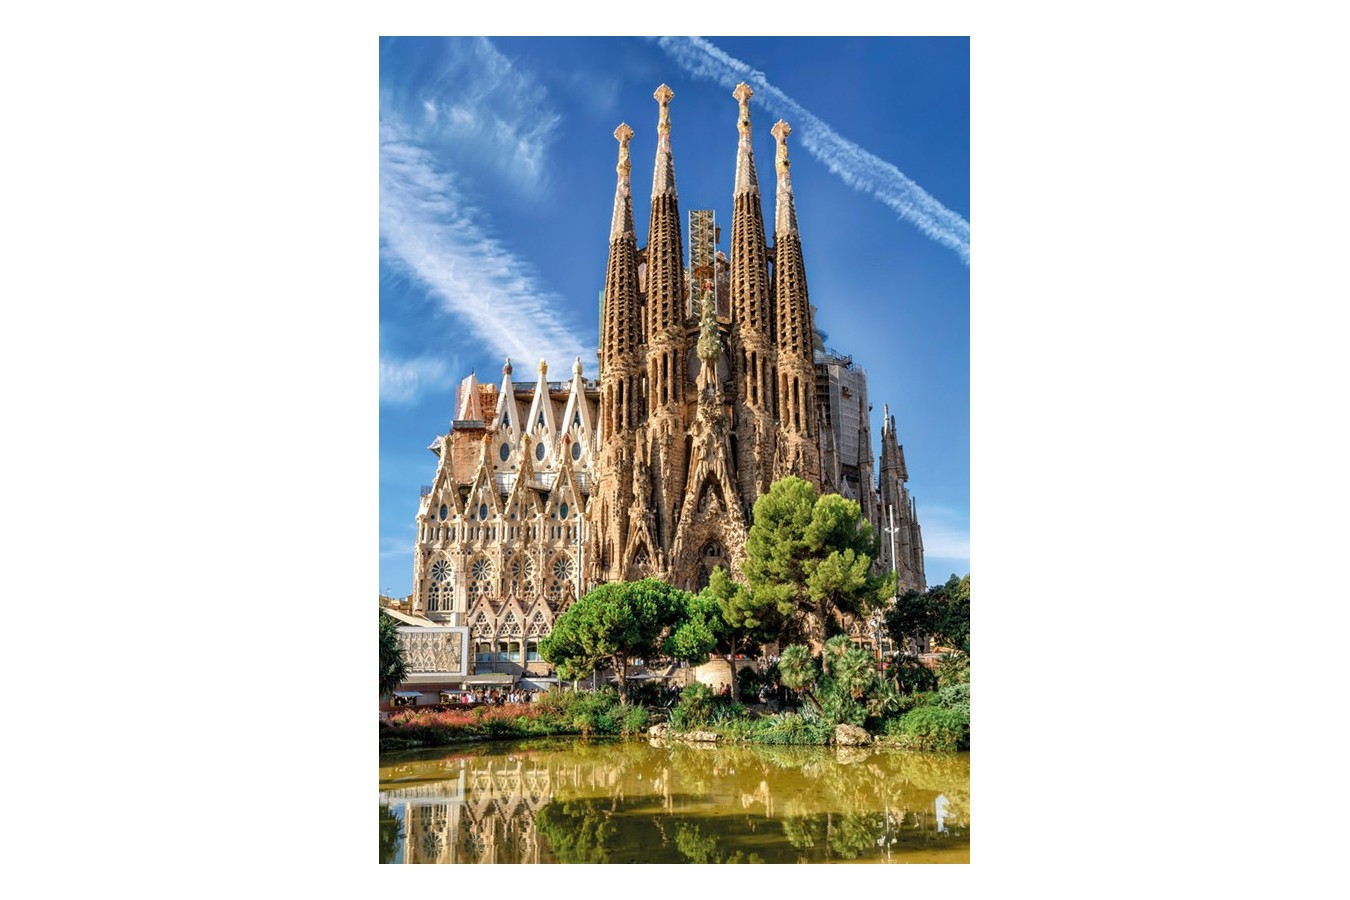 Puzzle Jumbo - Sagrada Familia, Barcelona, 1000 piese (18835)